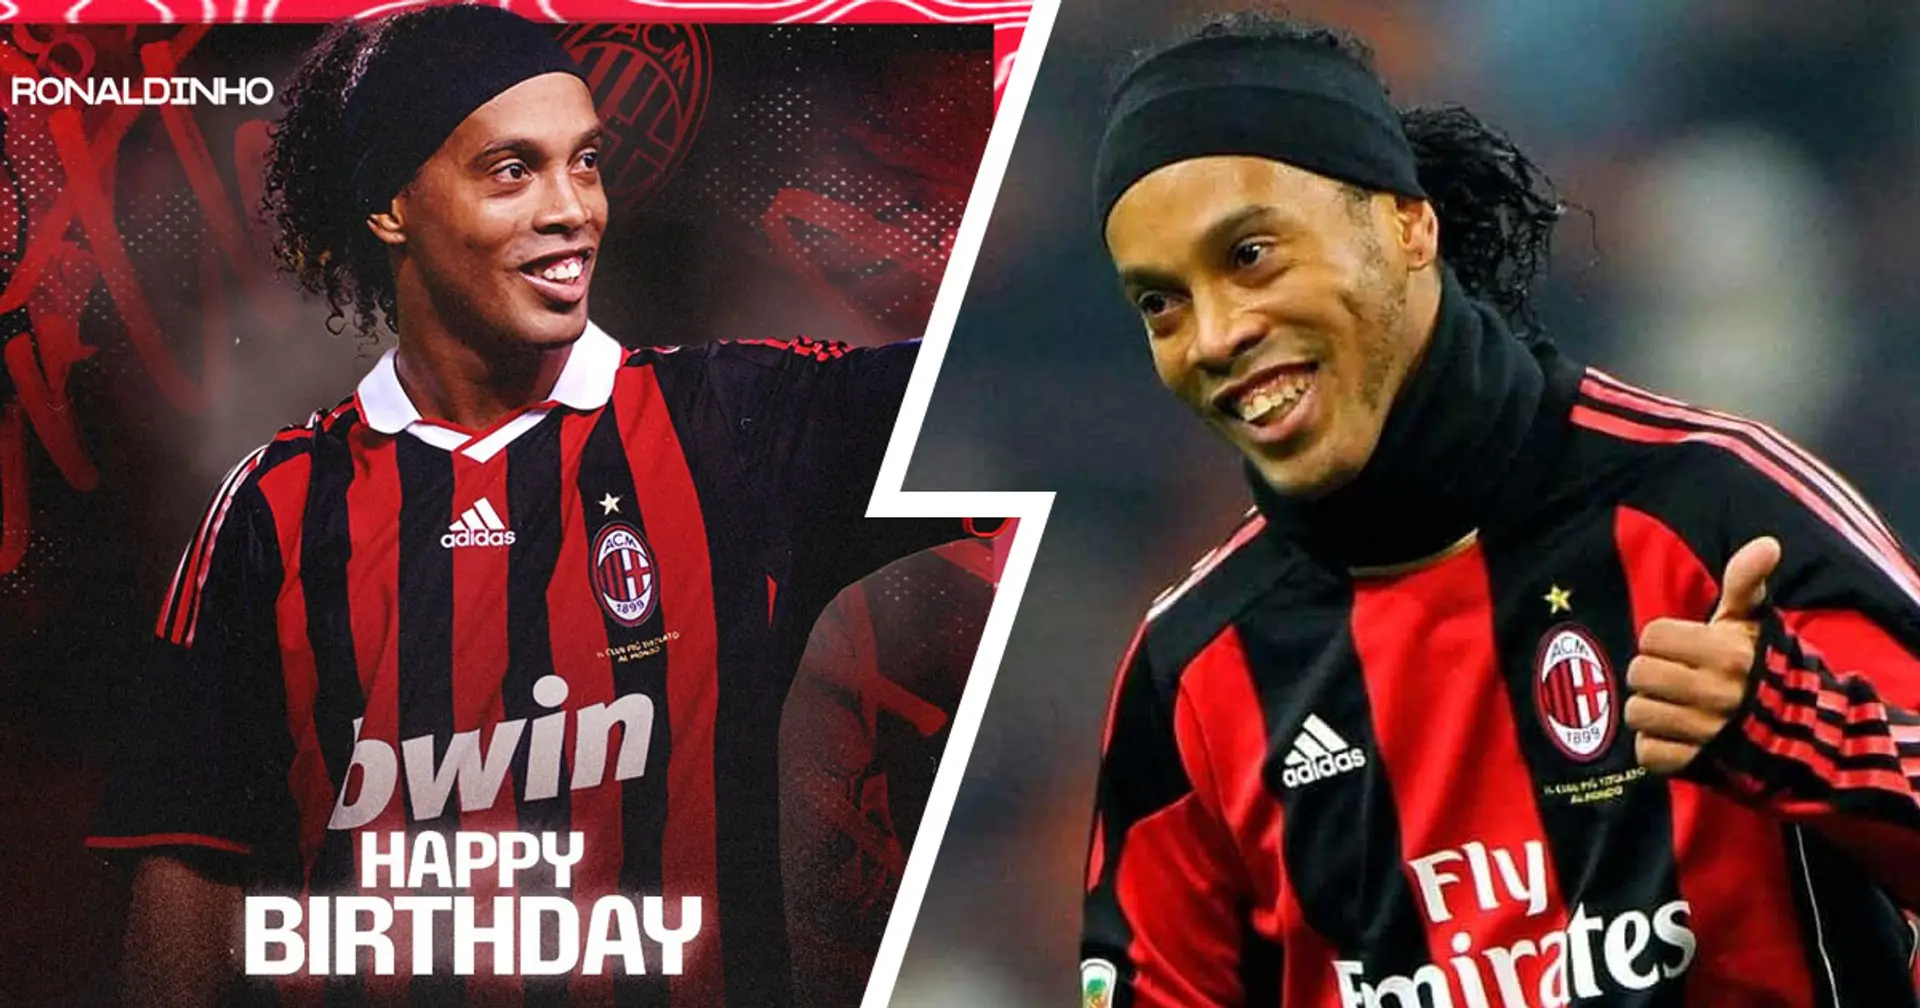 "Non pensavo si potesse essere più caldi dei catalani, i milanisti lo sono", buon compleanno alla leggenda del Milan Ronaldinho